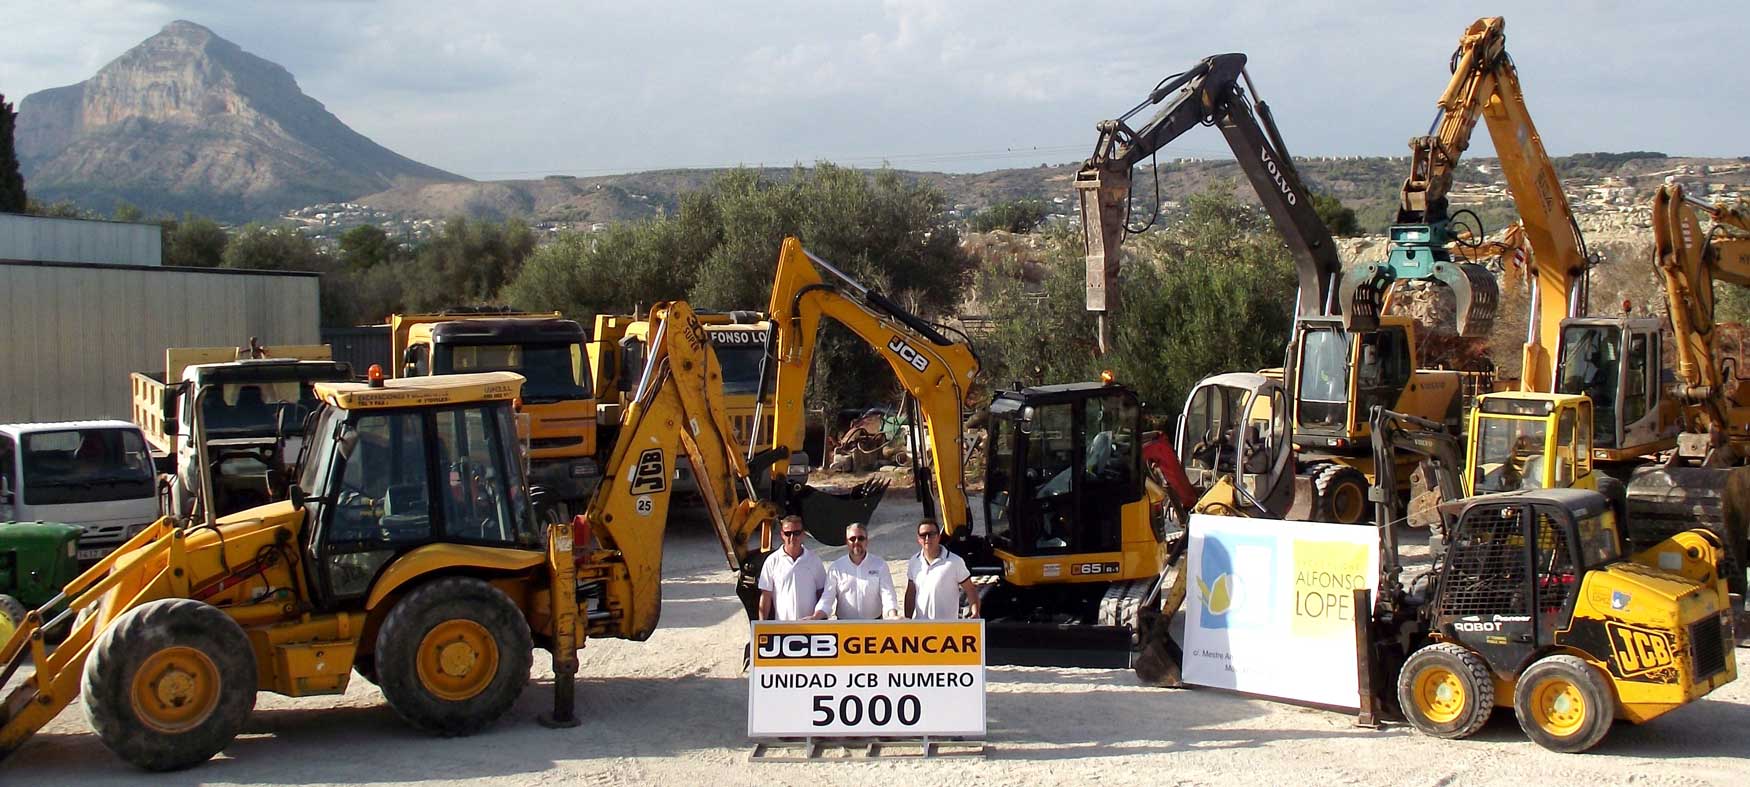 Entrega de la mquina 5.000 JCB en las instalaciones de Excavaciones Alfonso Lopez SL